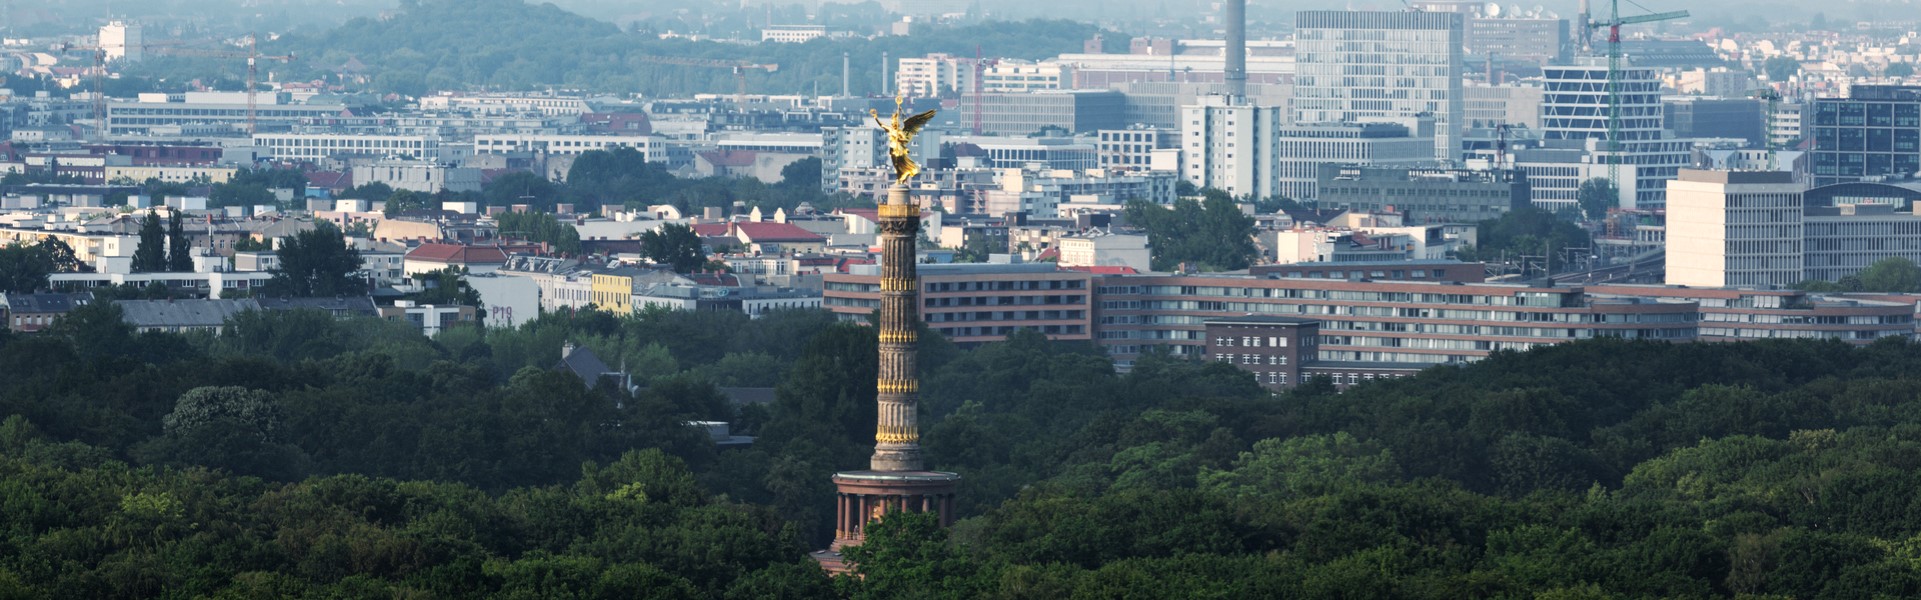 Skyline Berlin mit Tiergarten und Siegessäule